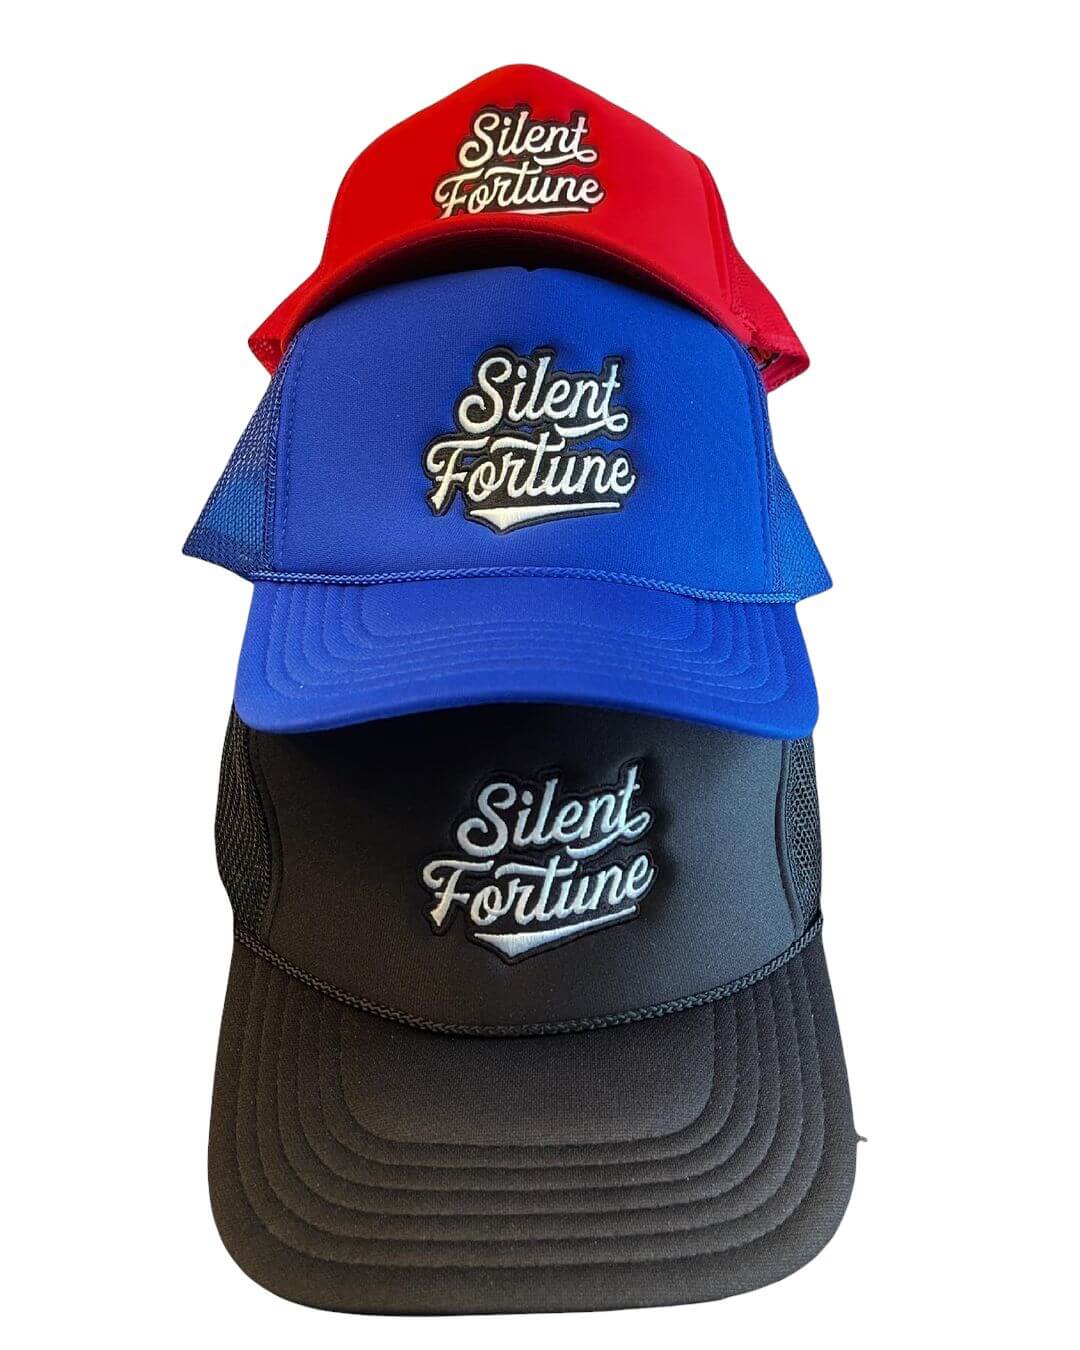 Silent Fortune Foam Trucker Hats